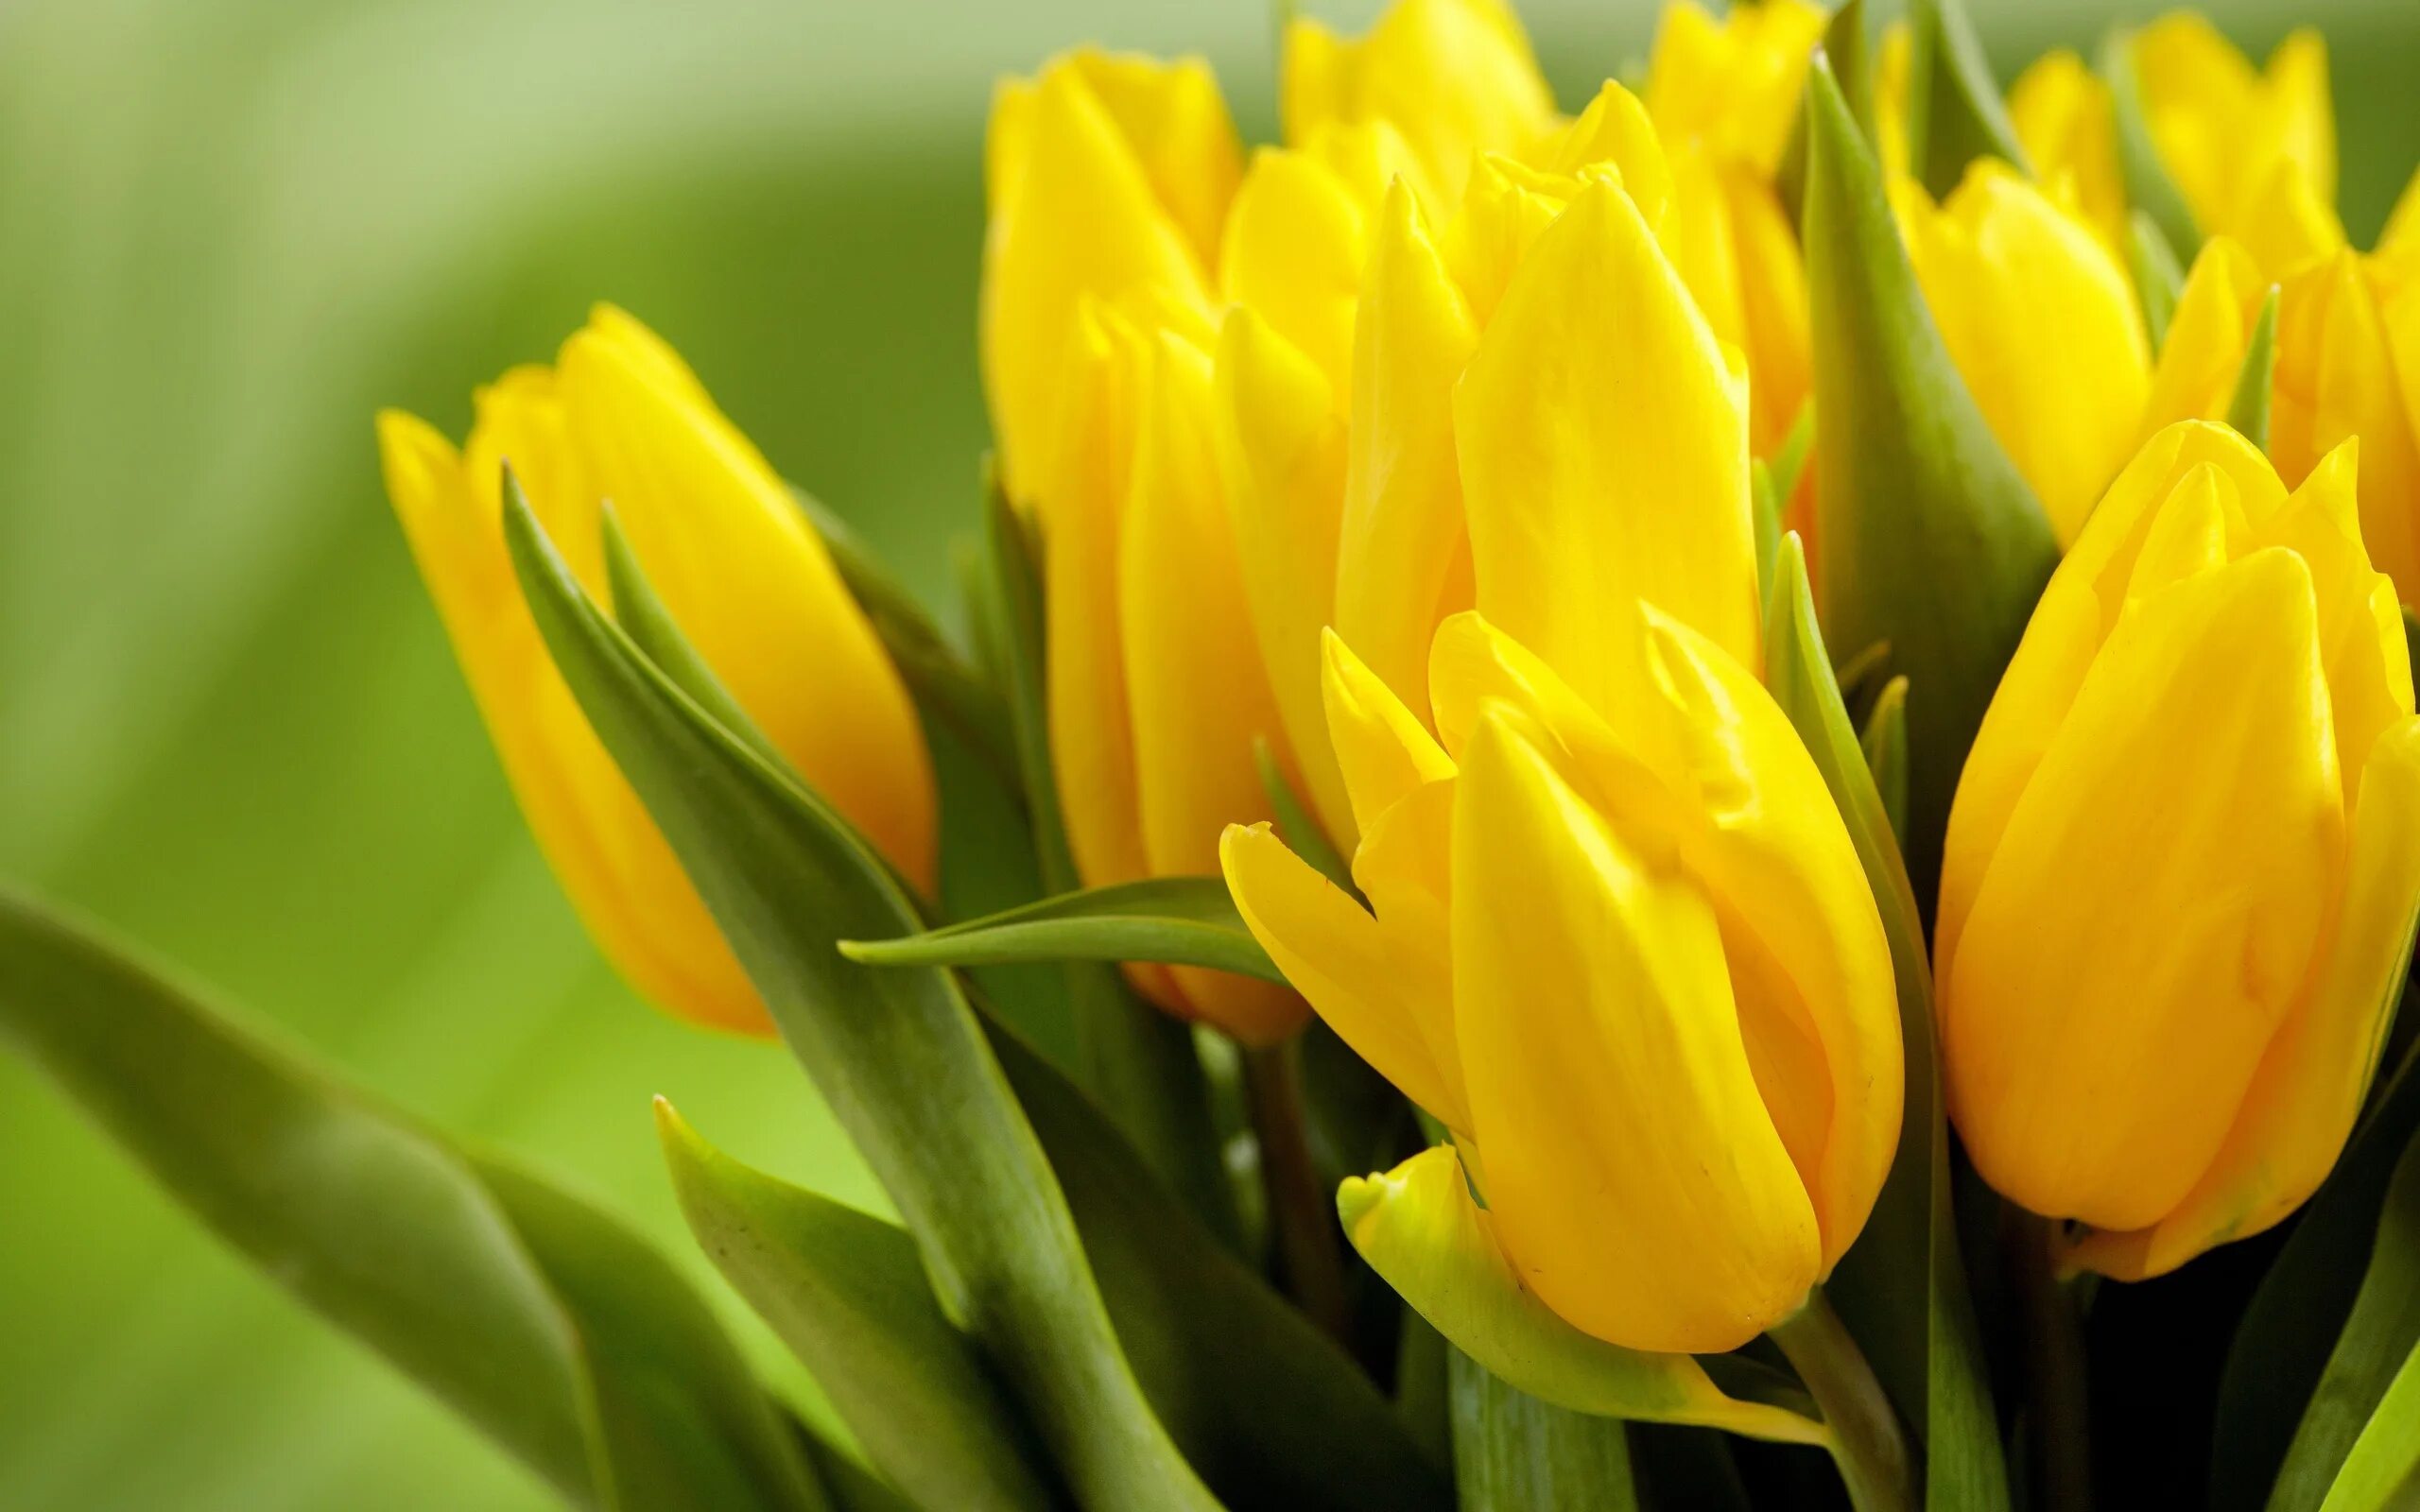 Обои желтые тюльпаны. Полевые желтые тюльпаны. Голландские желтые тюльпаны. Тюльпан AXEBON желтый. Тюльпан желтый Stengel.